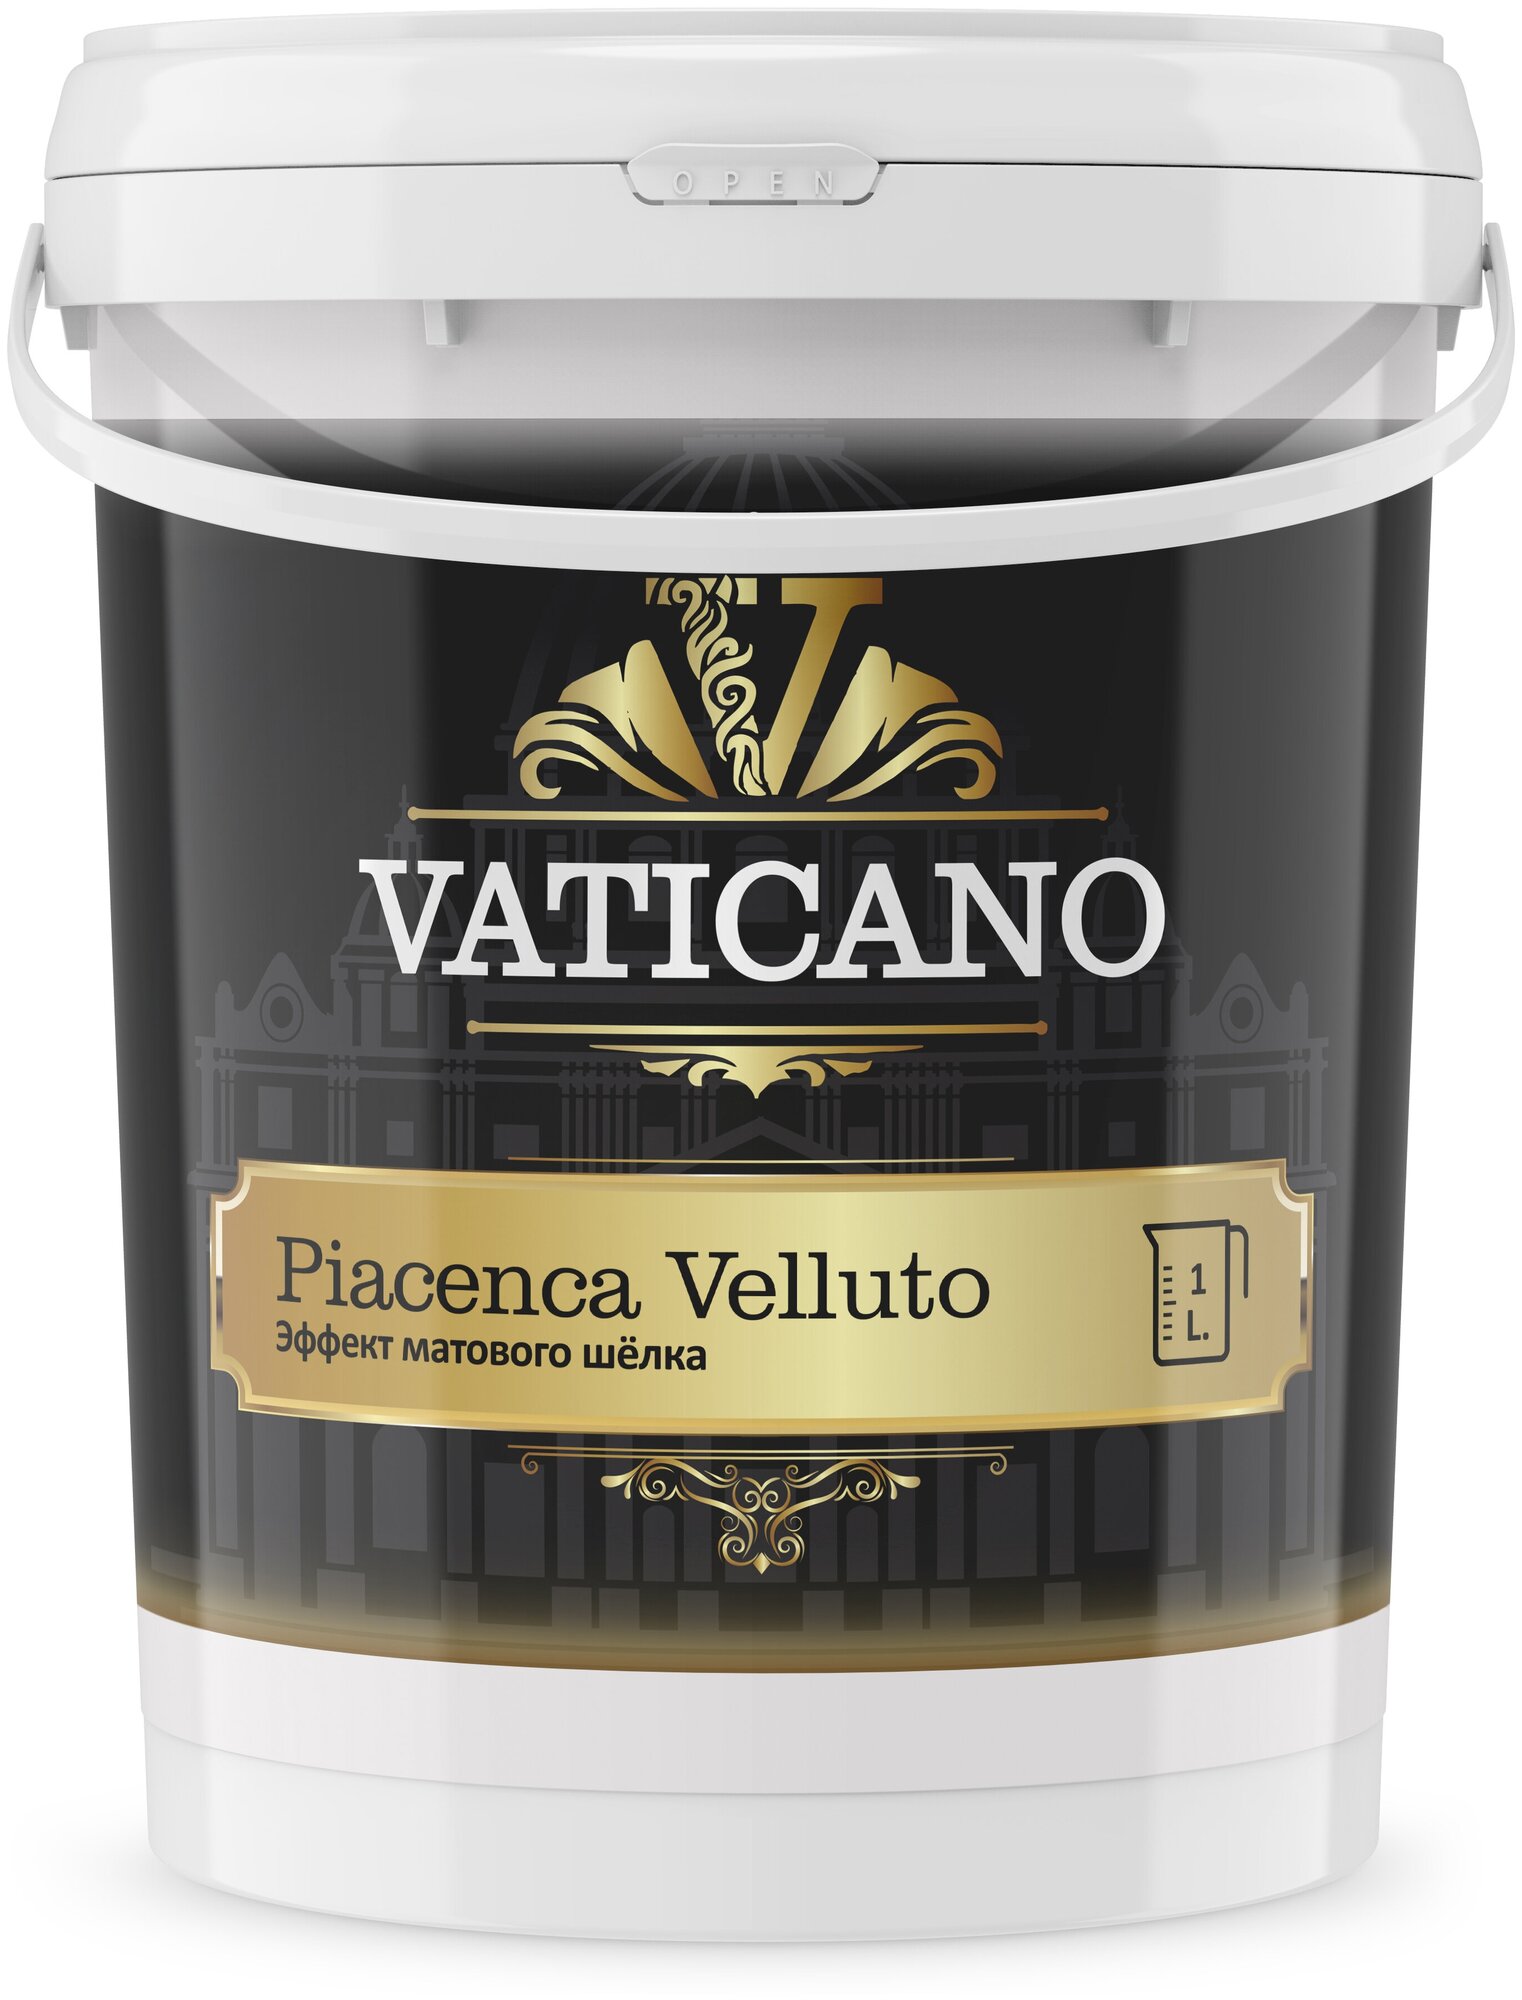 Декоративная краска VATICANO Piacenca Velluto 1 л, акриловая краска для стен с эффектом матового шелка.